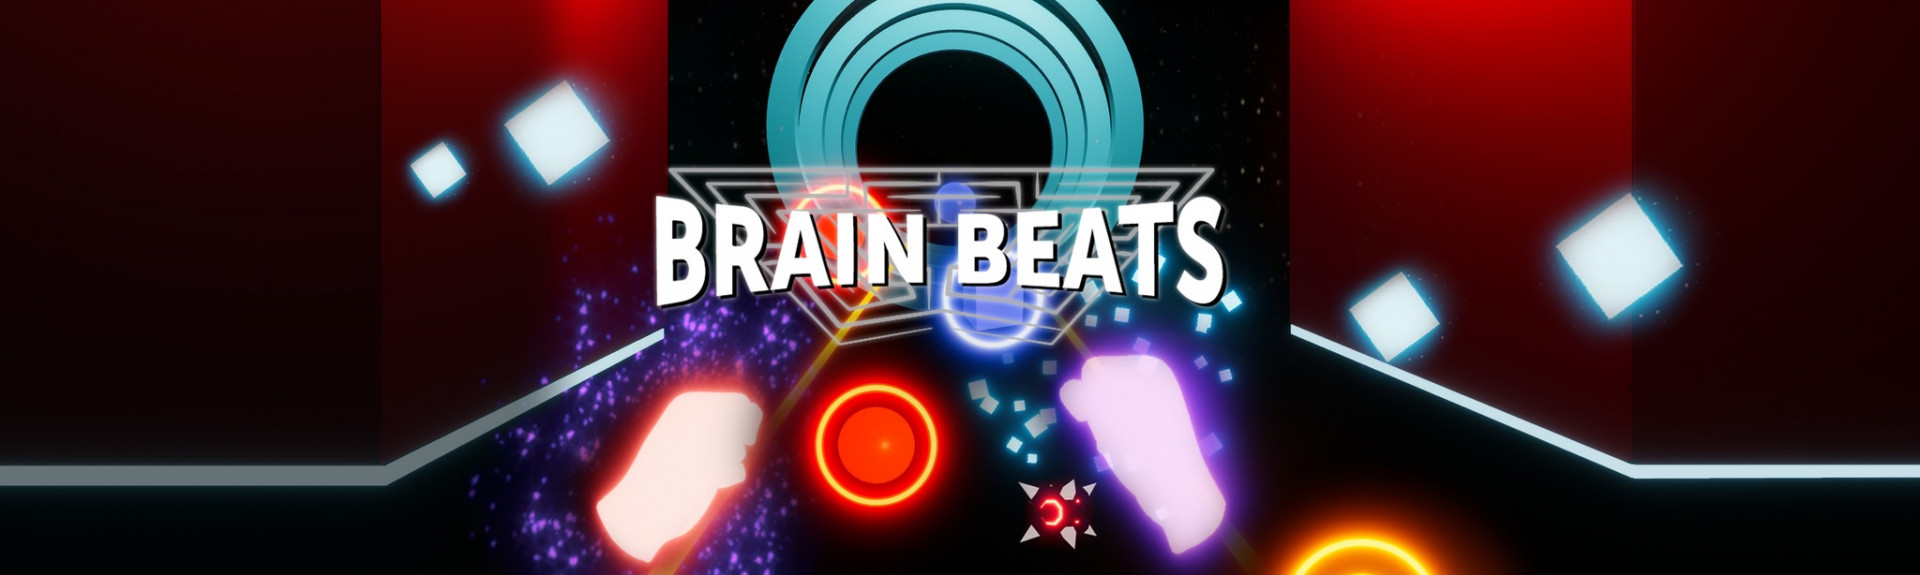 Brain Beats: ANÁLISIS